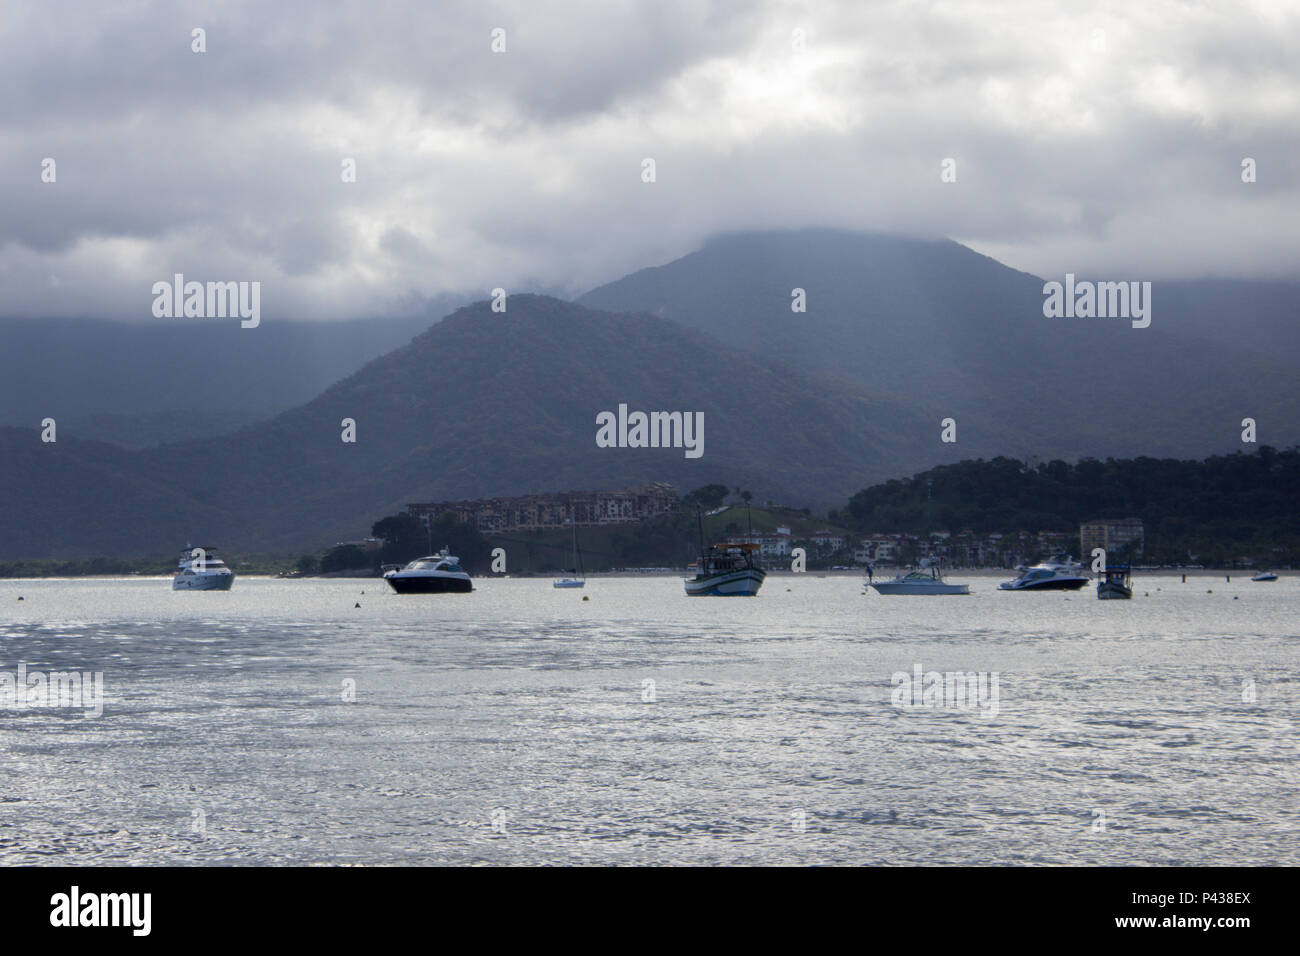 Costa de ilha com barcos navegando no mar com montanhas ao fundo em Ubatuba, SP, Brasil. Stock Photo